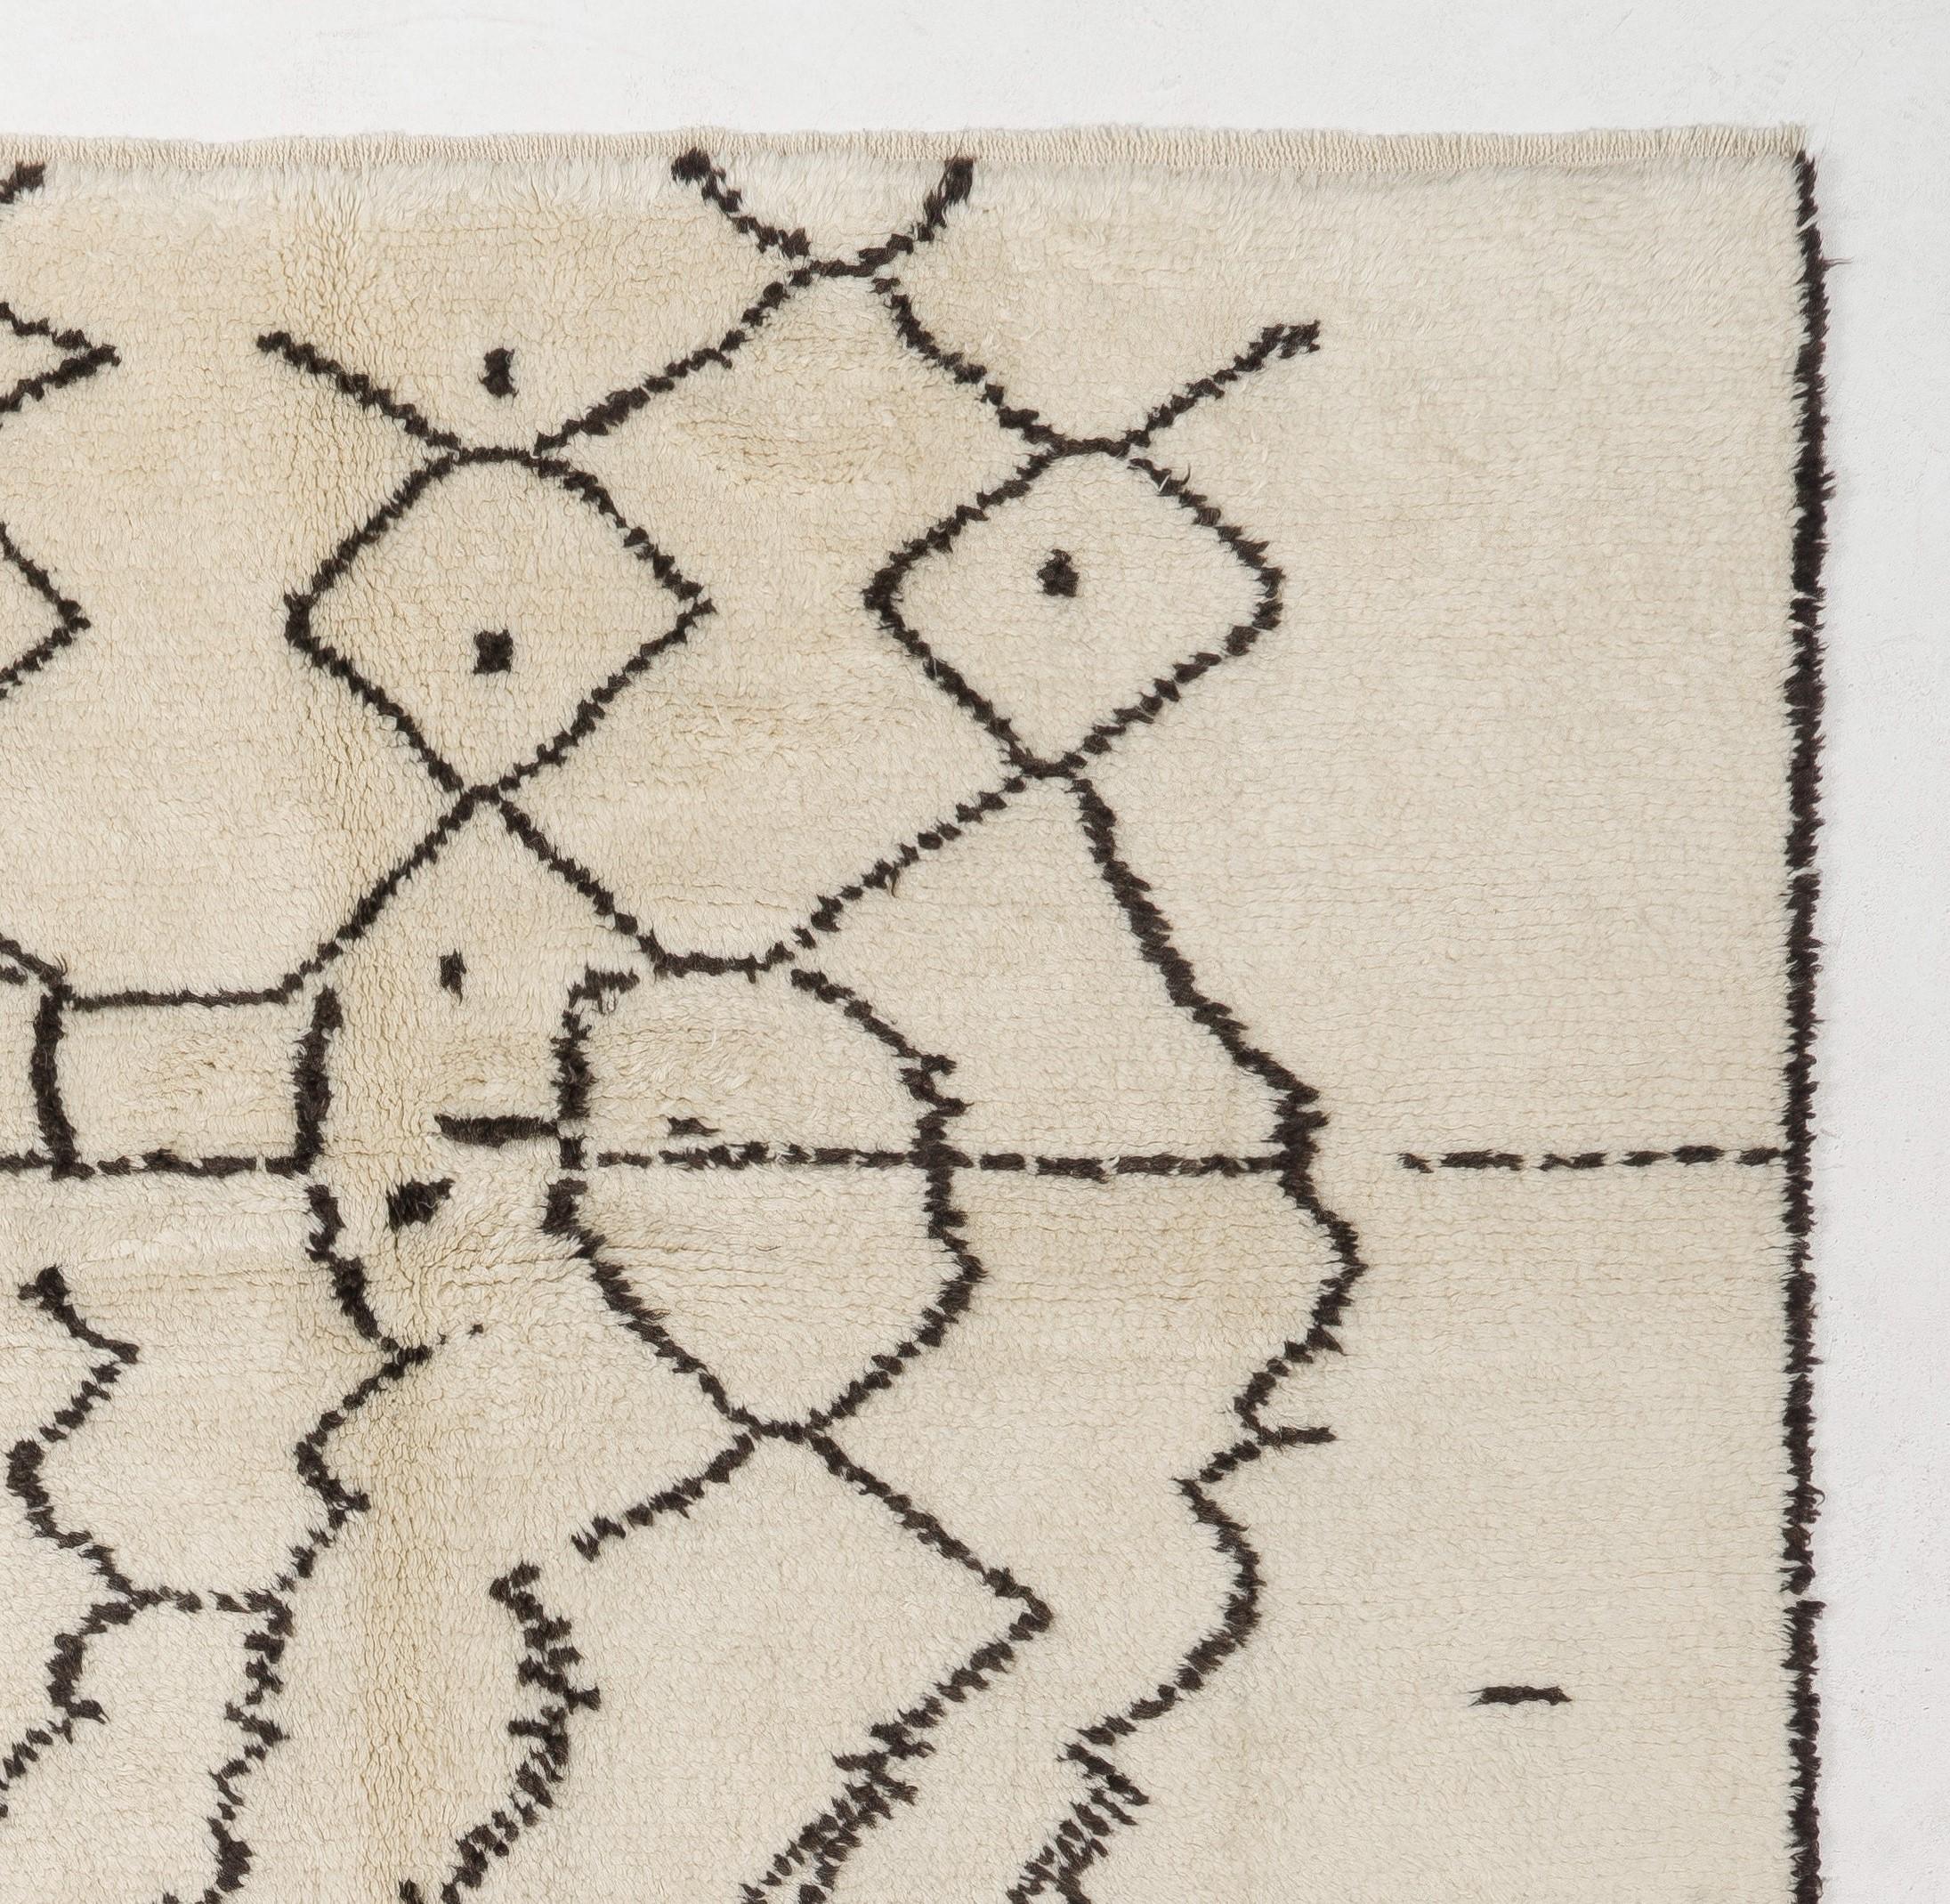 Ein moderner handgeknüpfter marokkanischer Teppich aus pflanzengefärbter Schafwolle. Maße: 8 X 10 ft.
Weicher, komfortabler Flor, ideal für Familien mit Kindern.
Erhältlich so wie er ist oder nach Maß in jeder gewünschten Größe und Farbkombination.